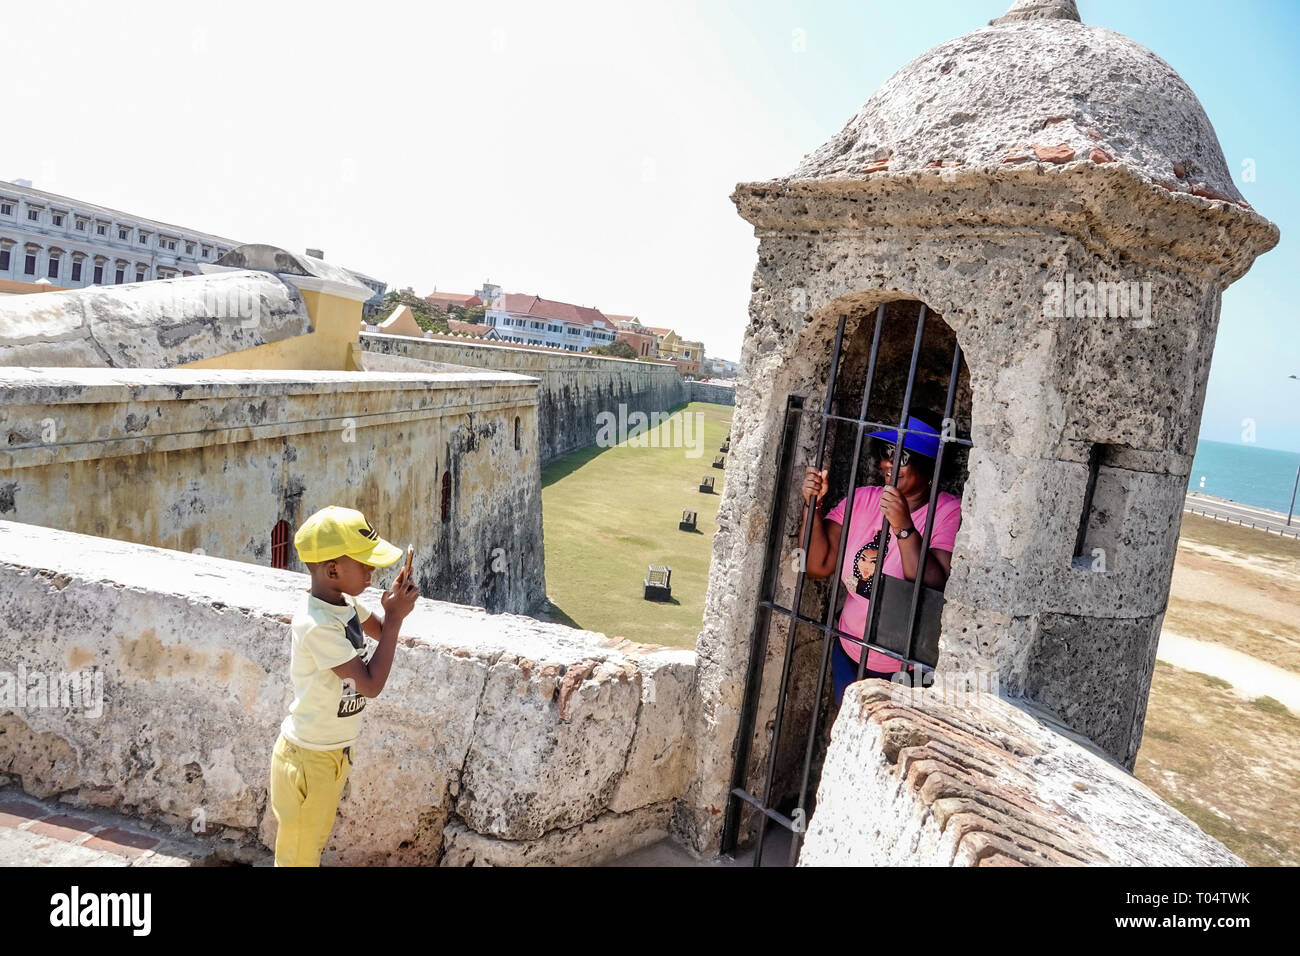 Cartagena Kolumbien, Baluarte de Santa Catalina, Bollwerk zur Küstenbefestigung, Schwarze Afro-Karibik, junge Jungen, männliches Kind Kinder Kinder Jugendliche, wom Stockfoto